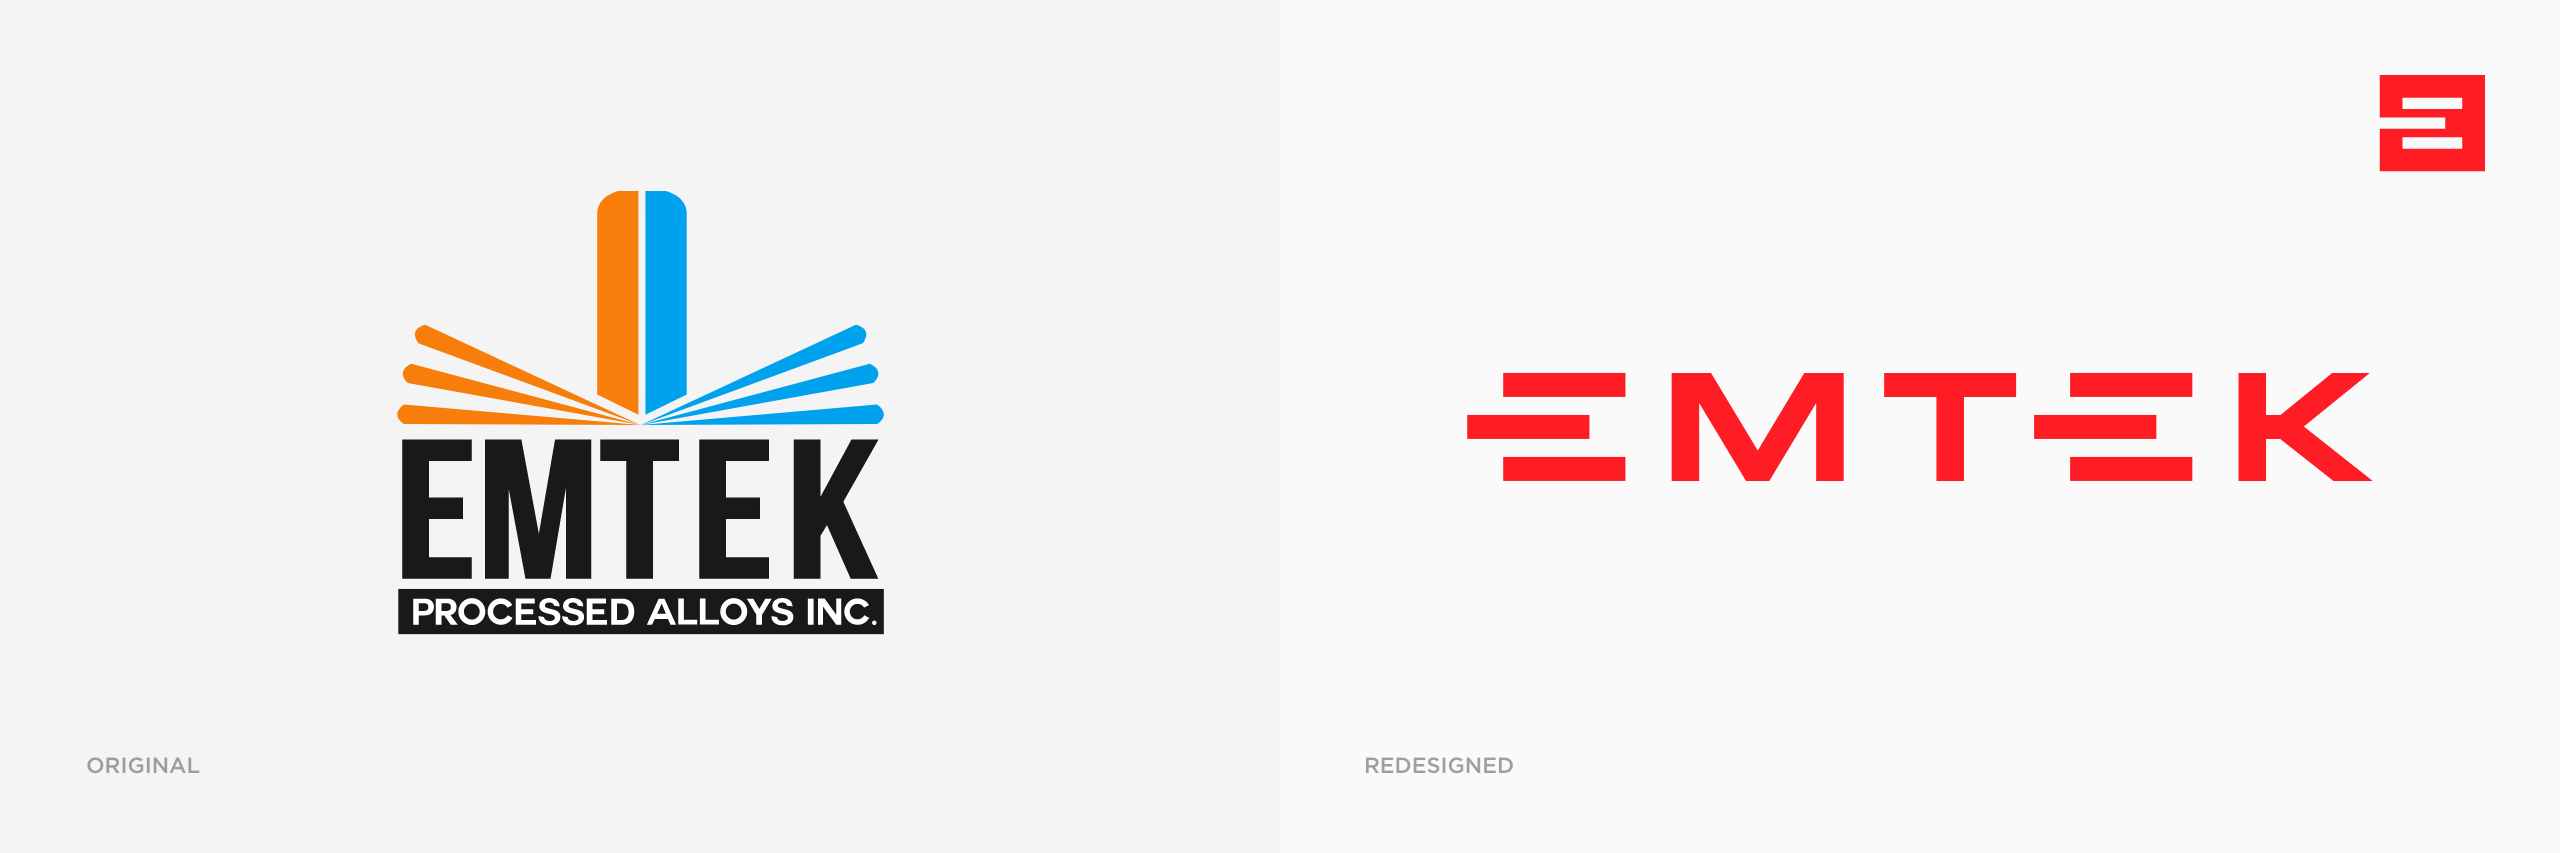 Emtek logo redesign comparison